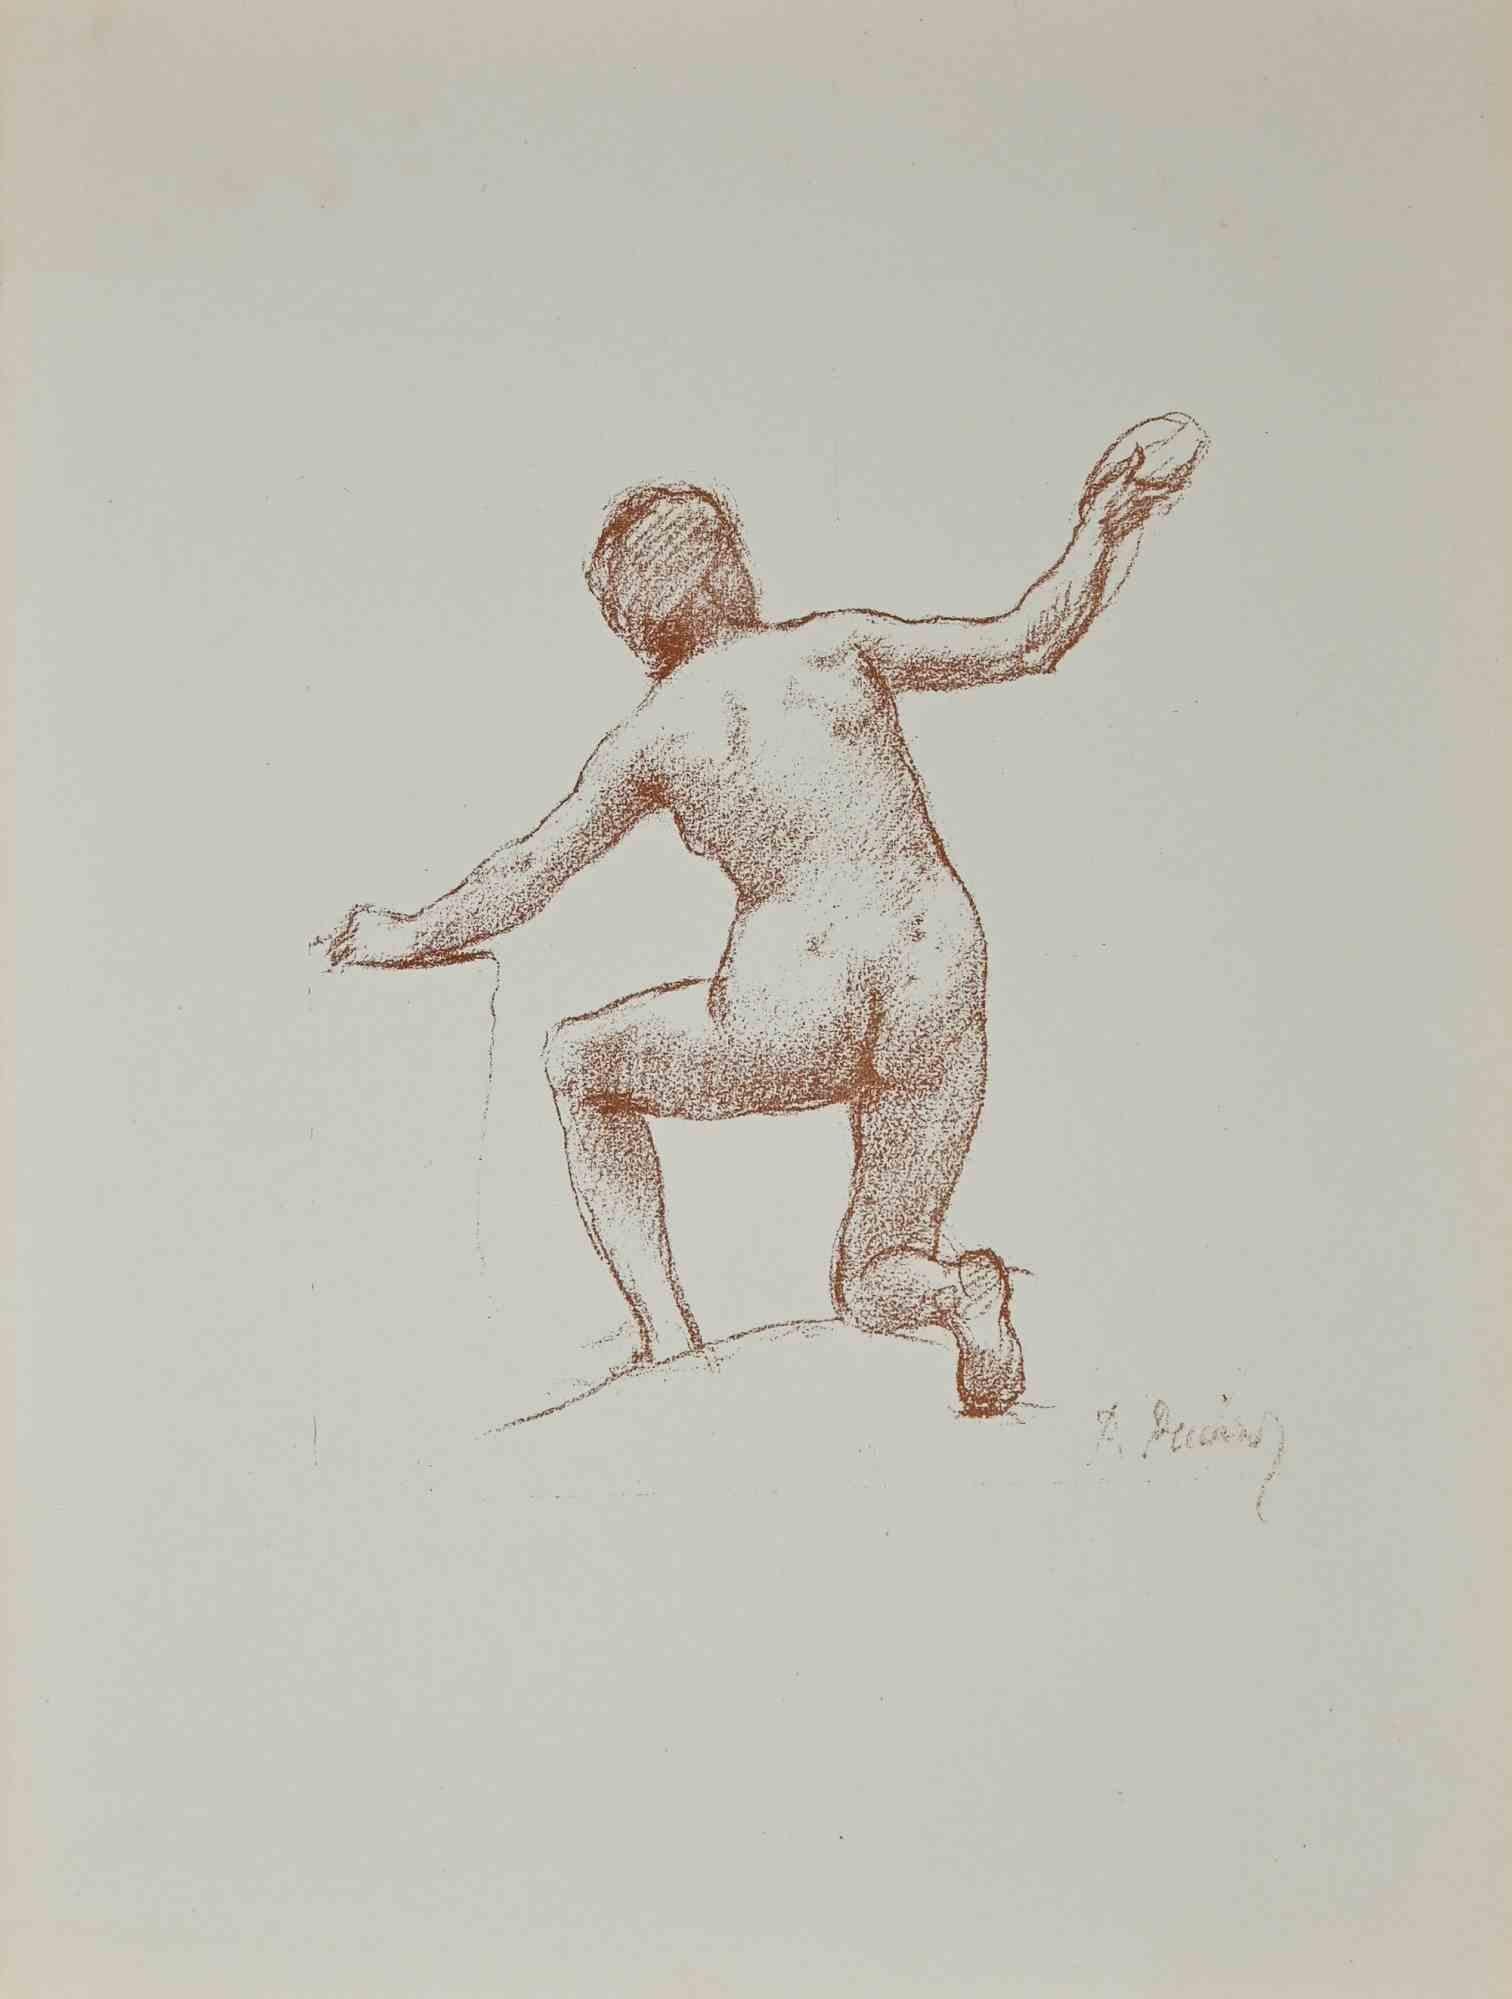 Nude - Original Lithograph by P. Puvis de Chavannes - Late 19th Century